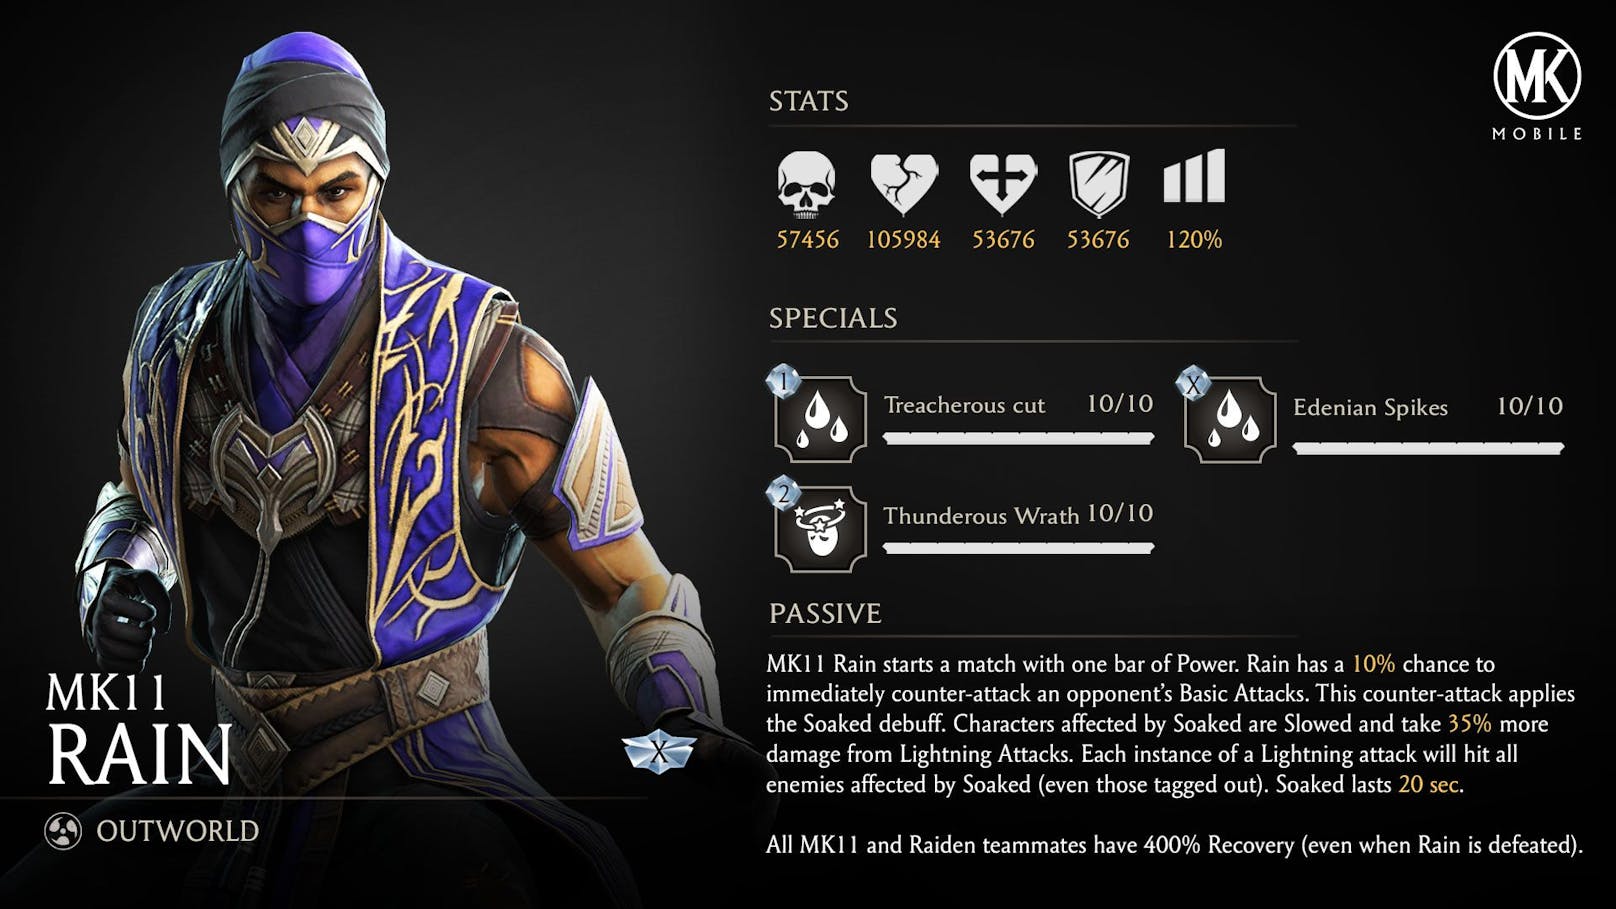 Charakter "MK11 Rain" erscheint zur Feier des 6. Jubiläums in "Mortal Kombat Mobile".